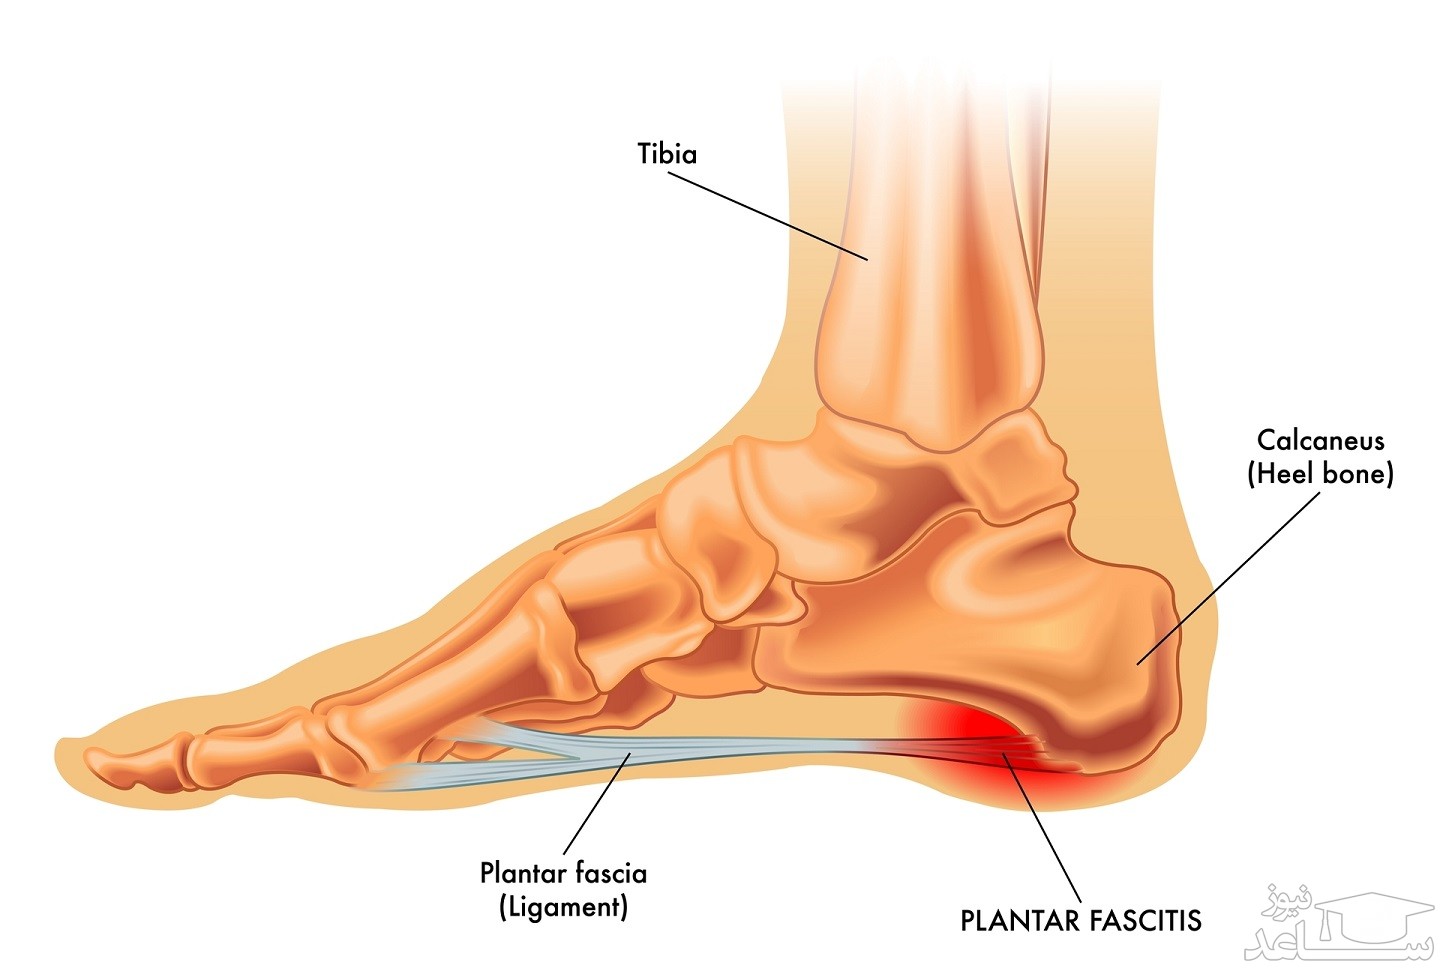 در مورد التهاب فاسیای کف پا چه می دانید؟